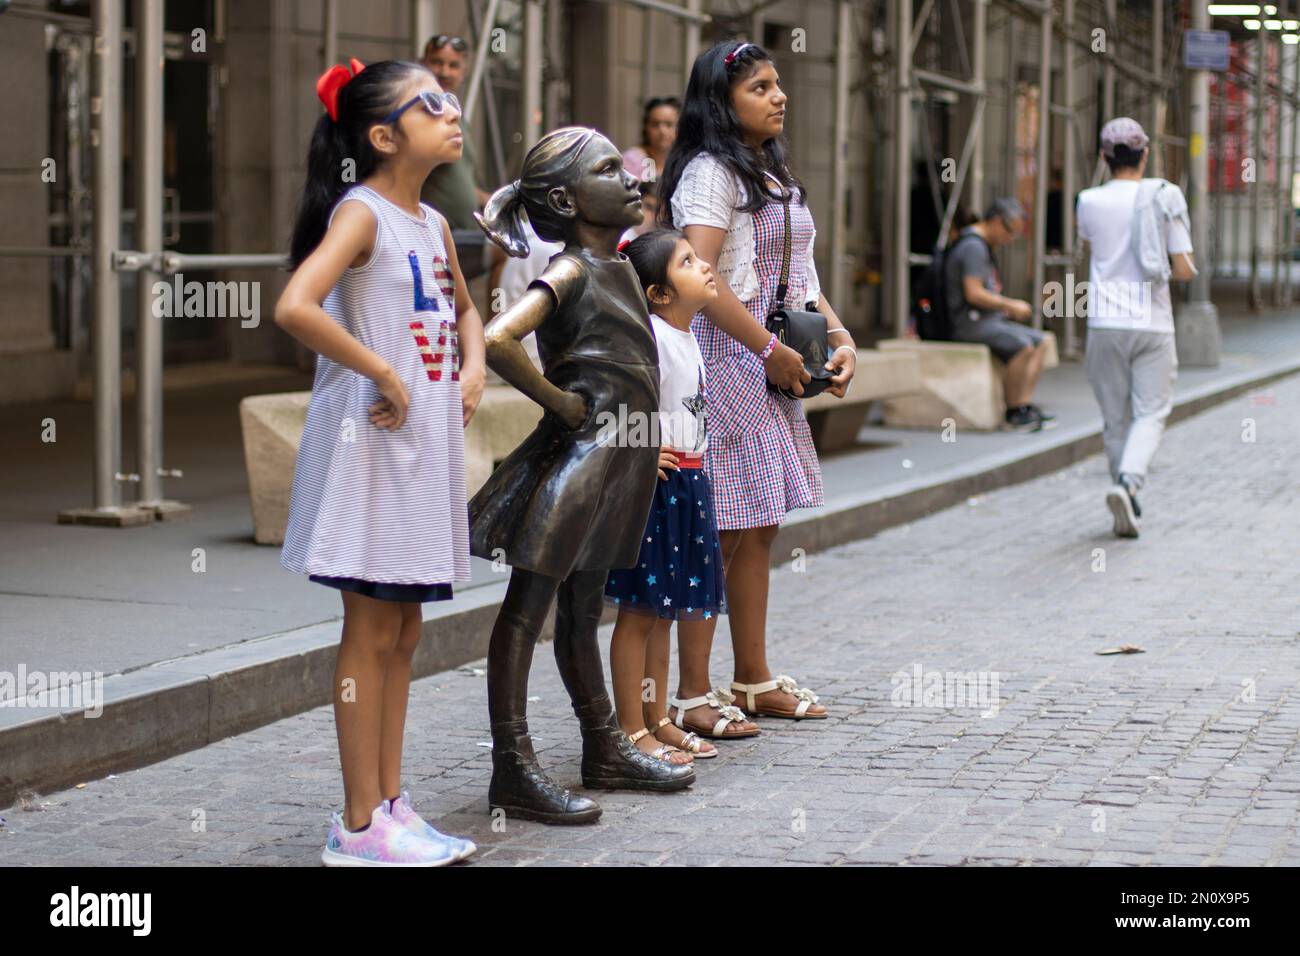 Les jeunes visiteurs du quartier financier de Manhattan, New York, posent avec la statue de la fille sans fée face au bâtiment de la Bourse de New York ... Banque D'Images